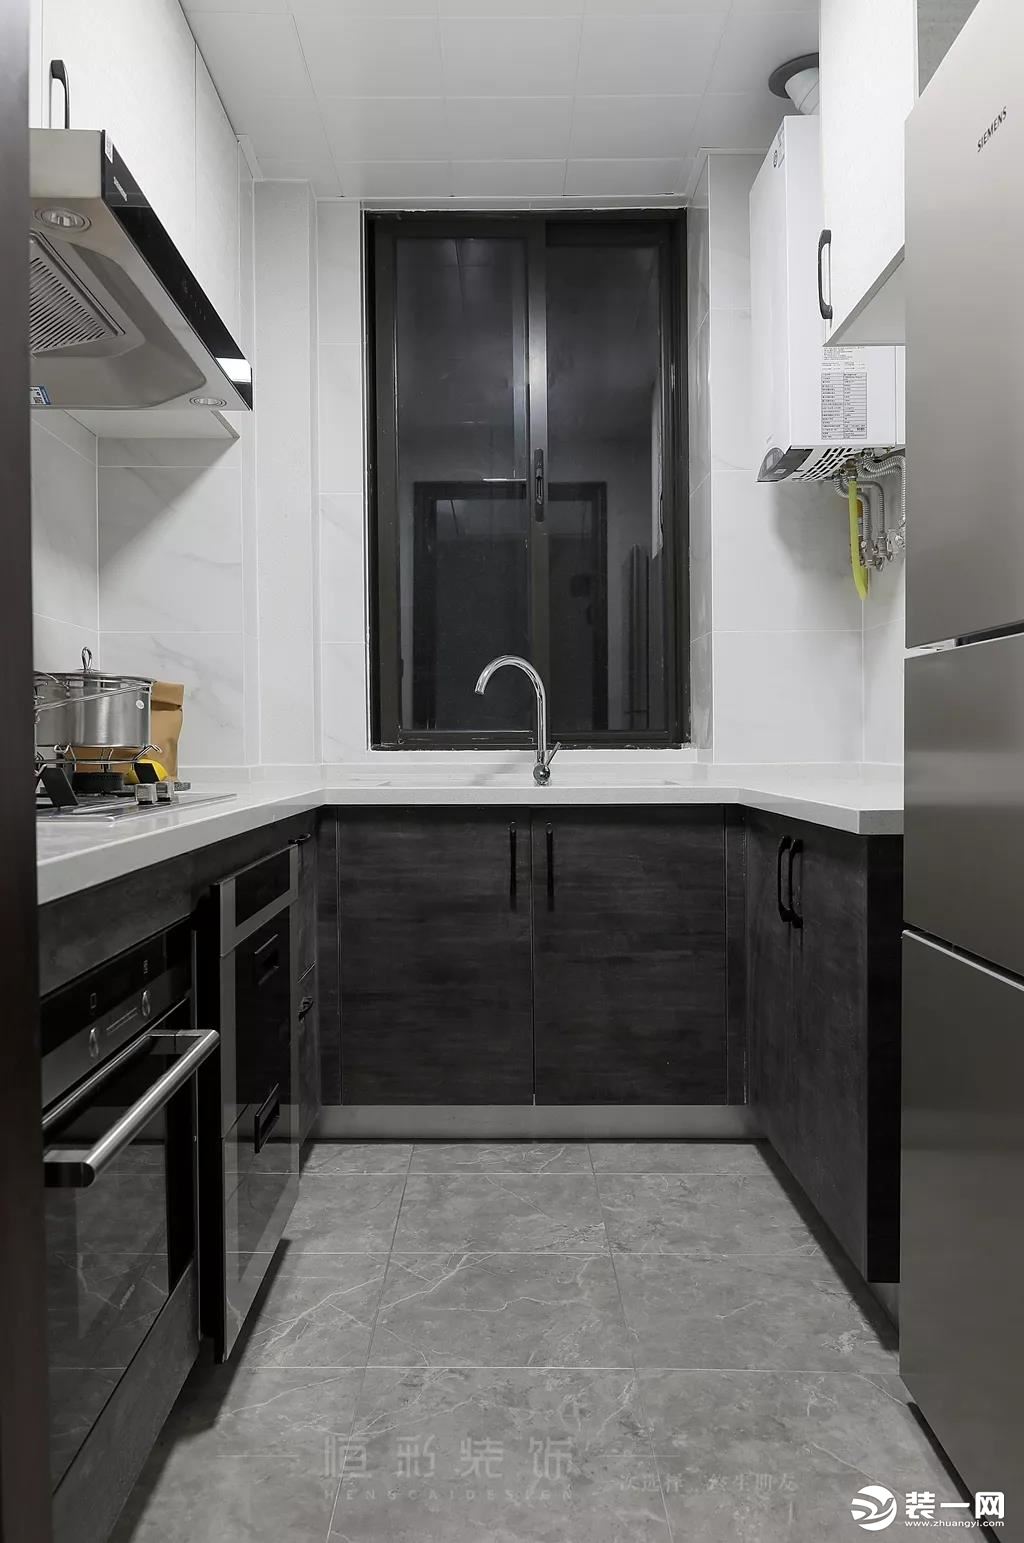 厨房色彩上浅下深，层次分明。白色墙砖搭配灰色大理石纹理的釉面地砖，搭配深色的橱柜，简洁大方。